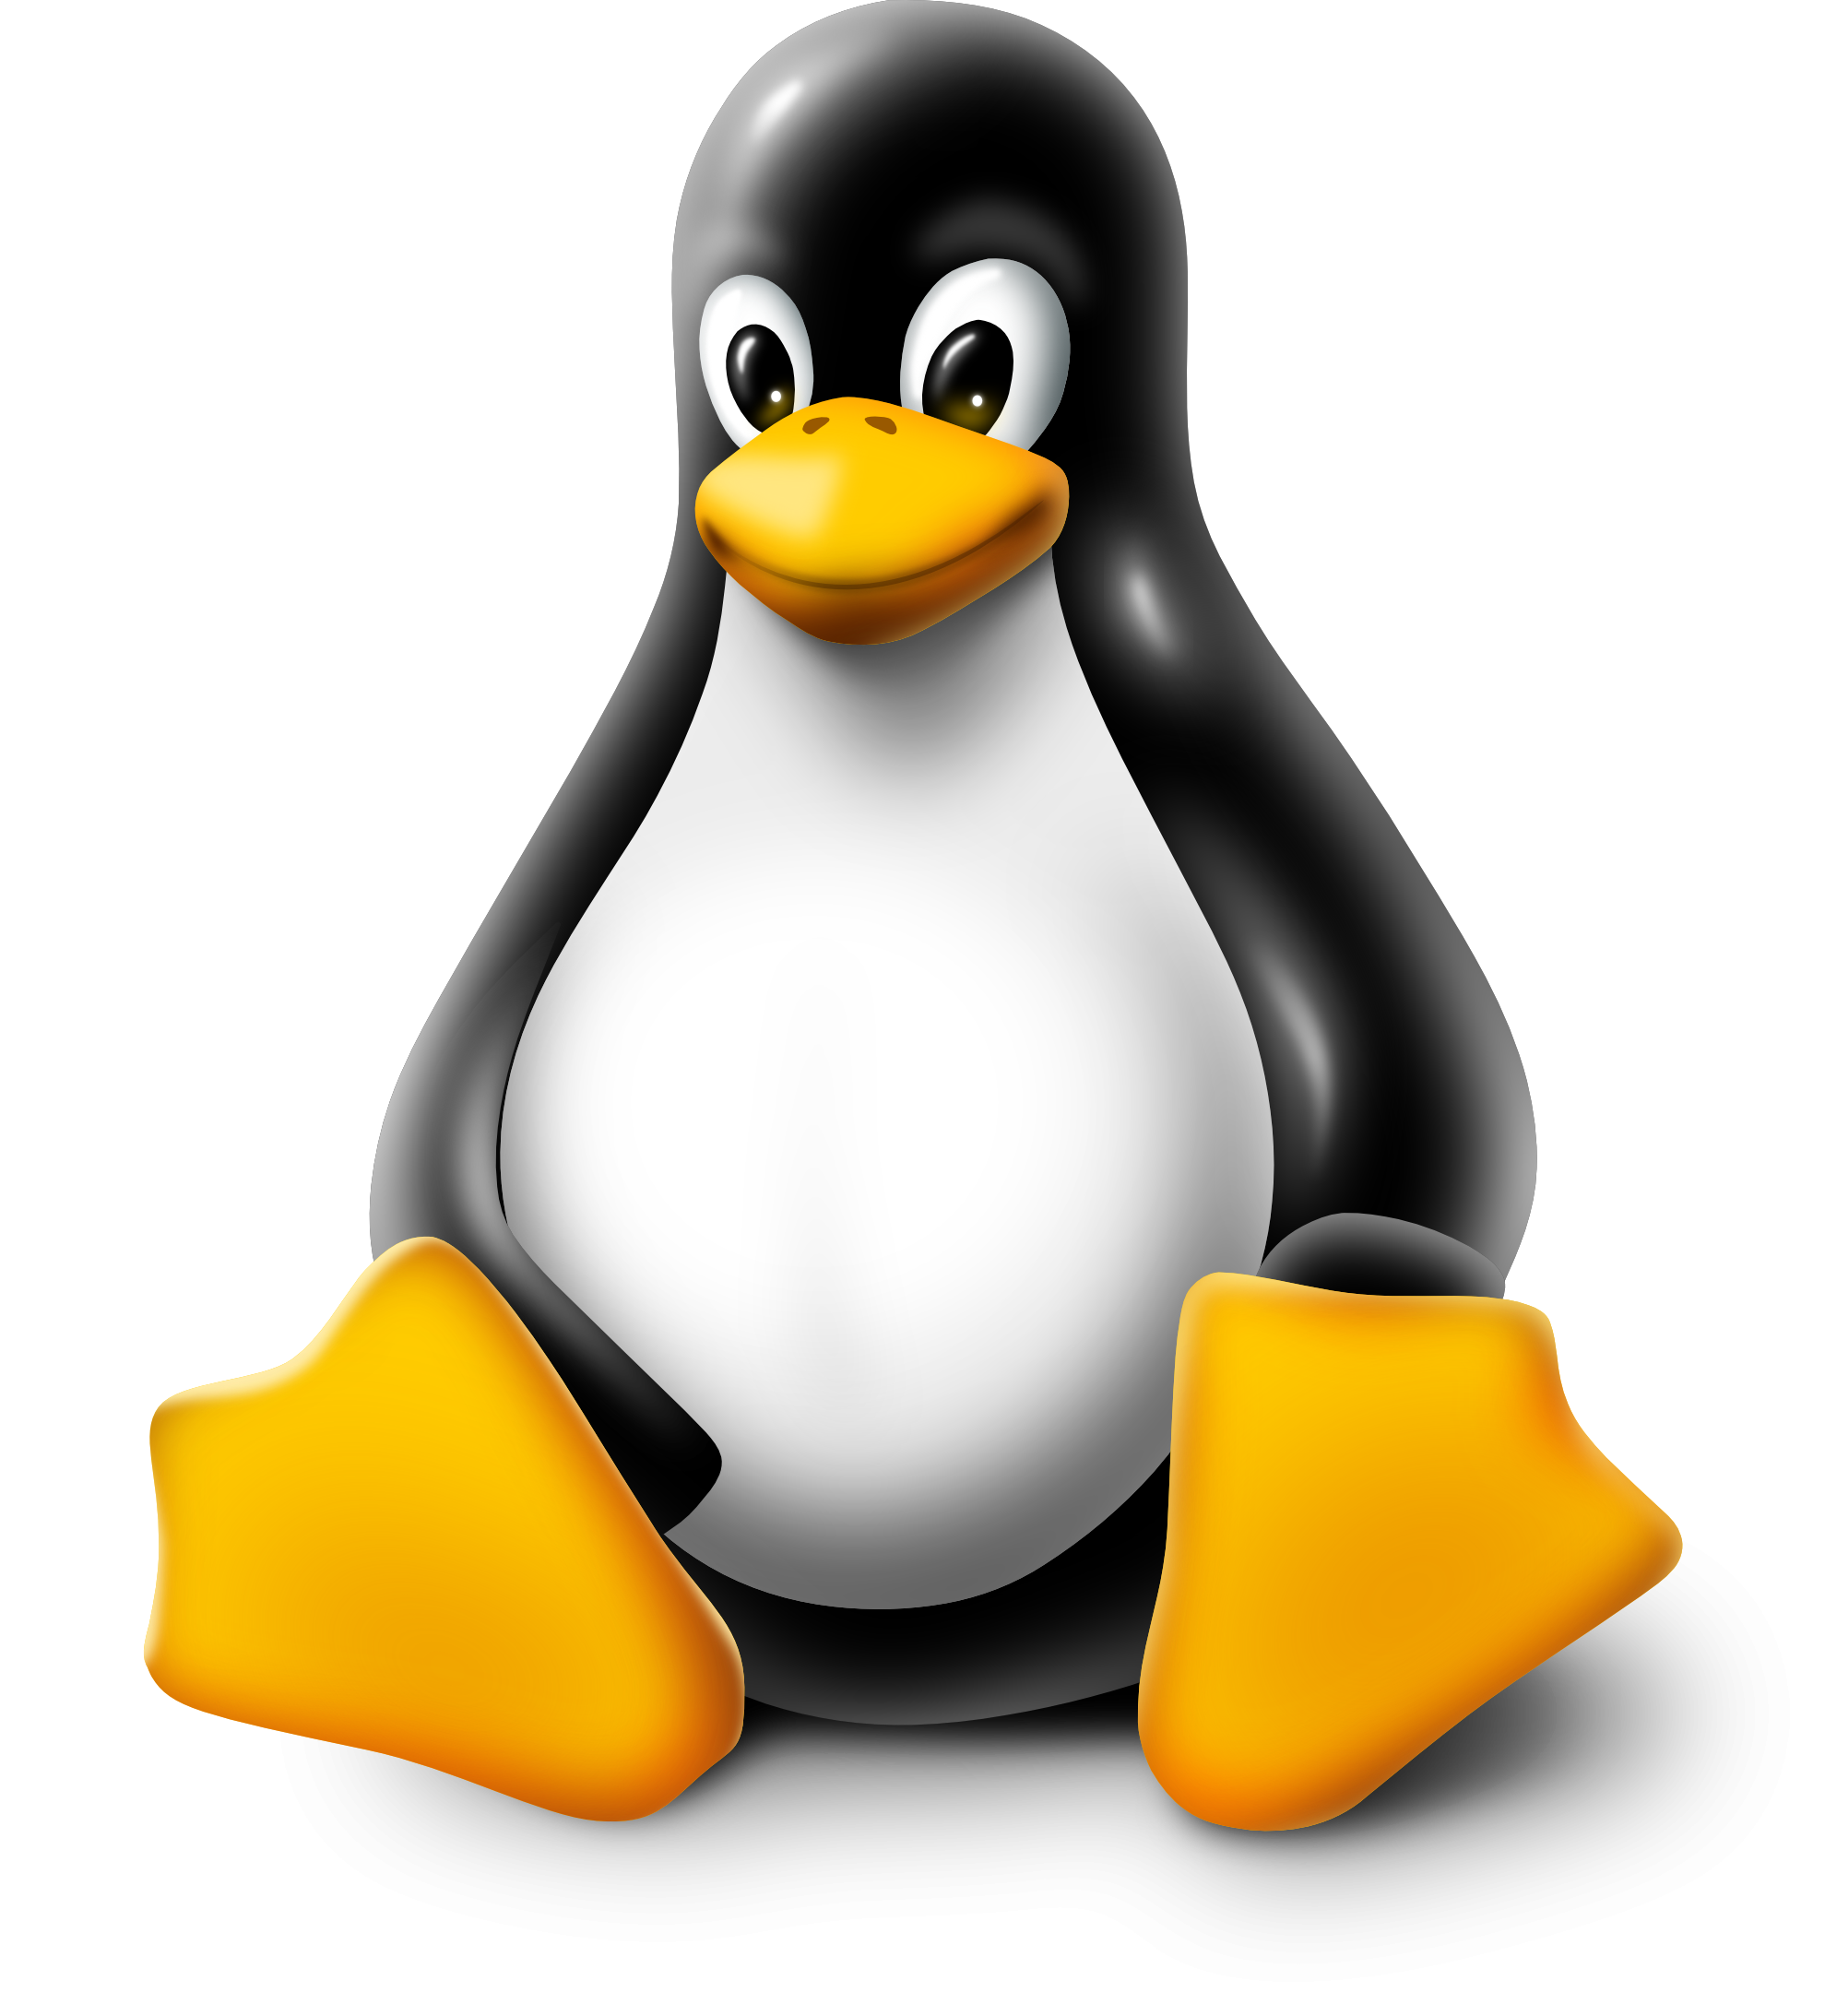 Linux Logo PNG Download Image